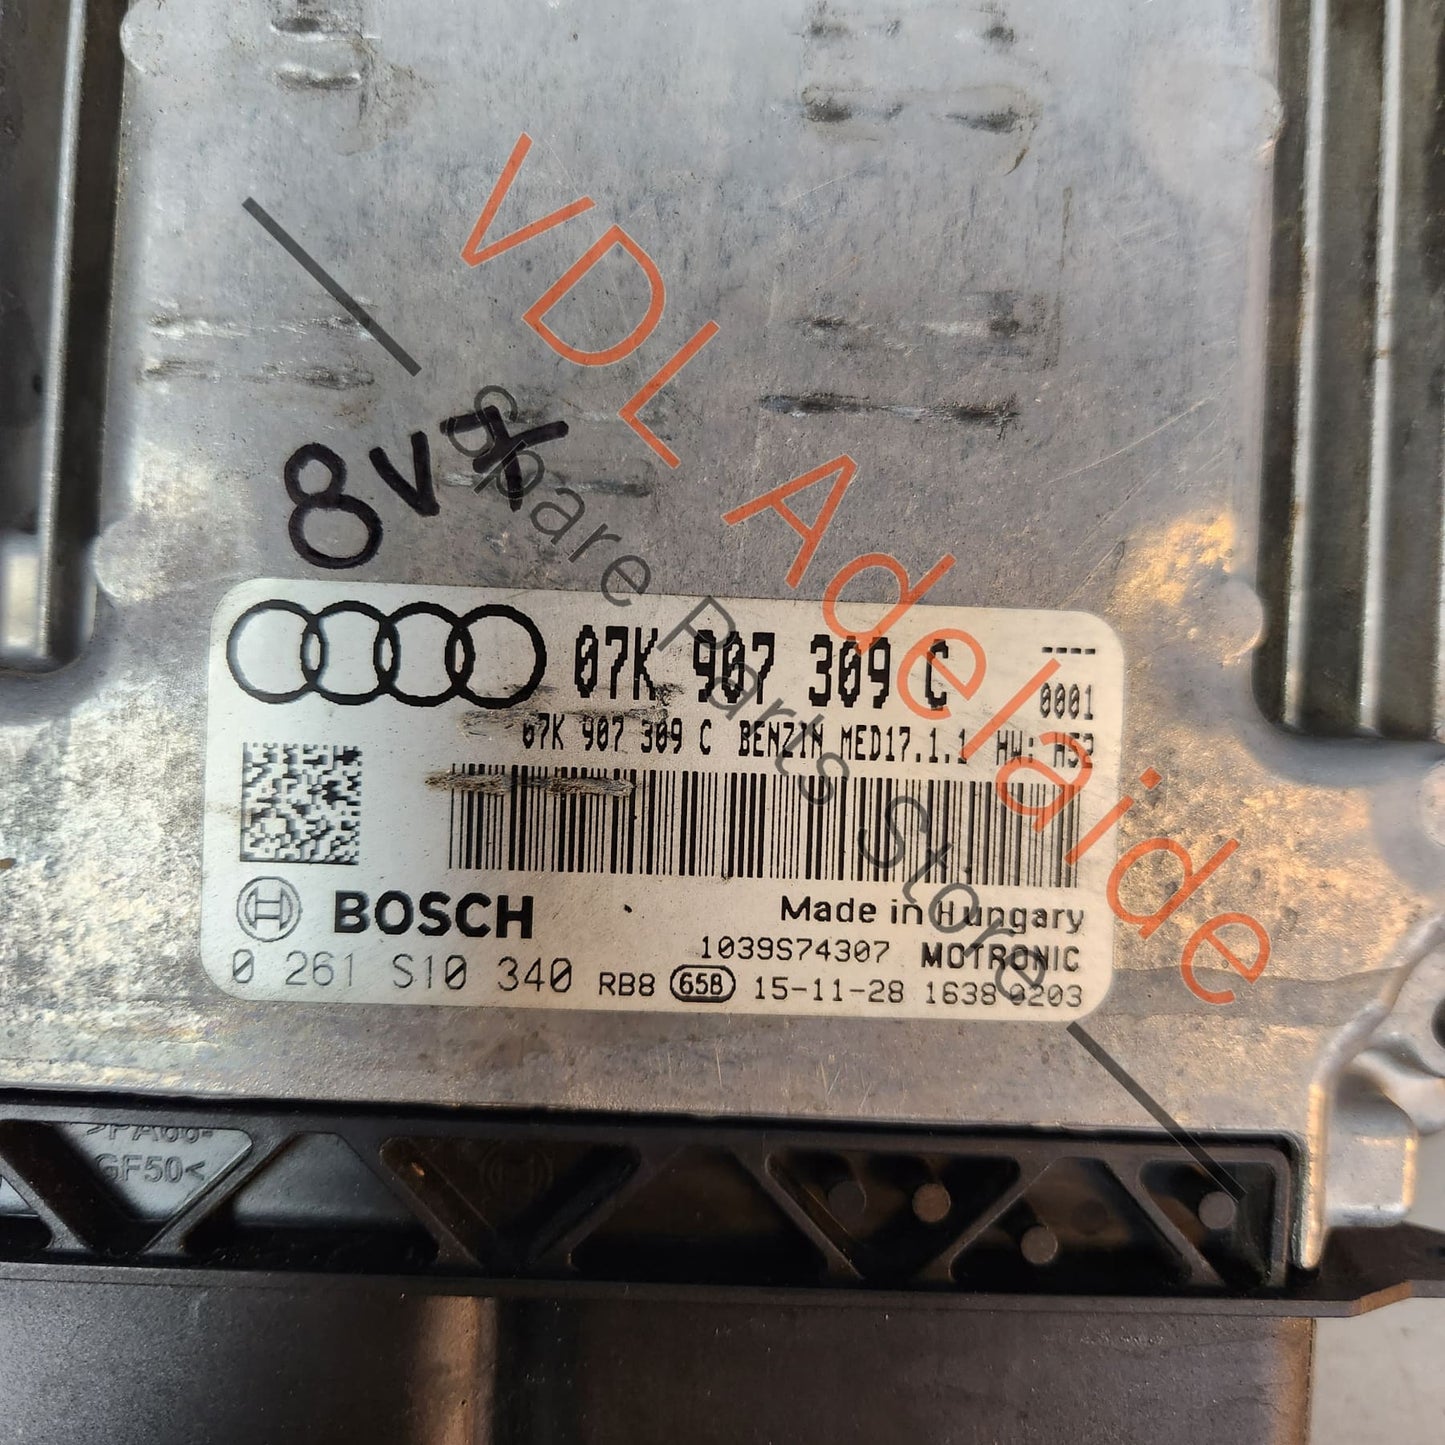 07K907309C 8V0907404   Audi RS3 8V Control Unit for 2.5L CZGB Petrol Engine ECU MED17.1.1 8V0907404 07K907309C